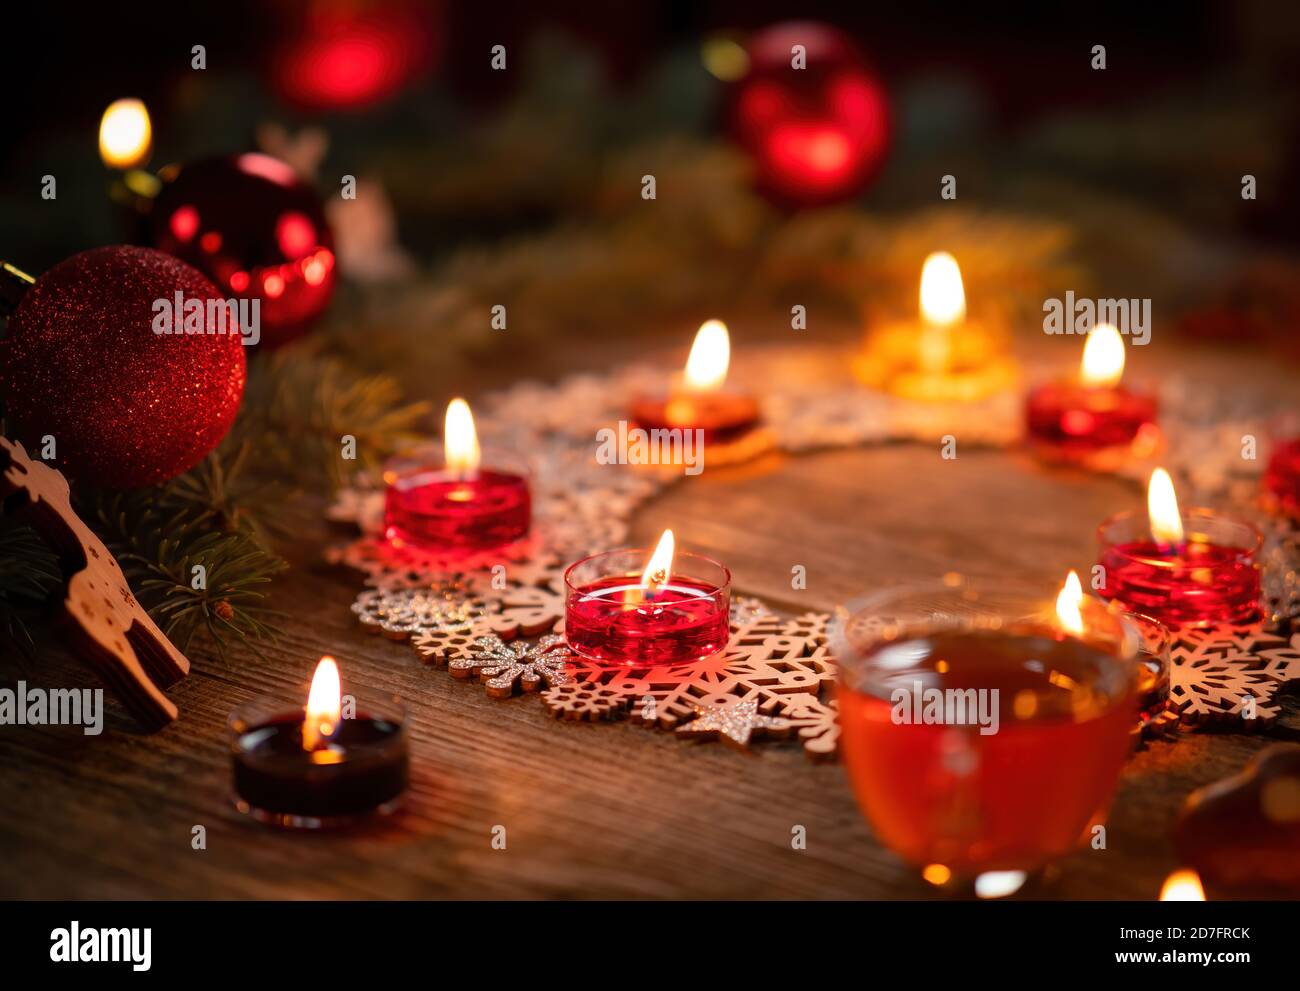 Décoration ornementale d'hiver avec bougies allumées sur table rustique en bois. Punch au vin chaud avec pain d'épice au premier plan. Vacances de Noël et nouveau Banque D'Images